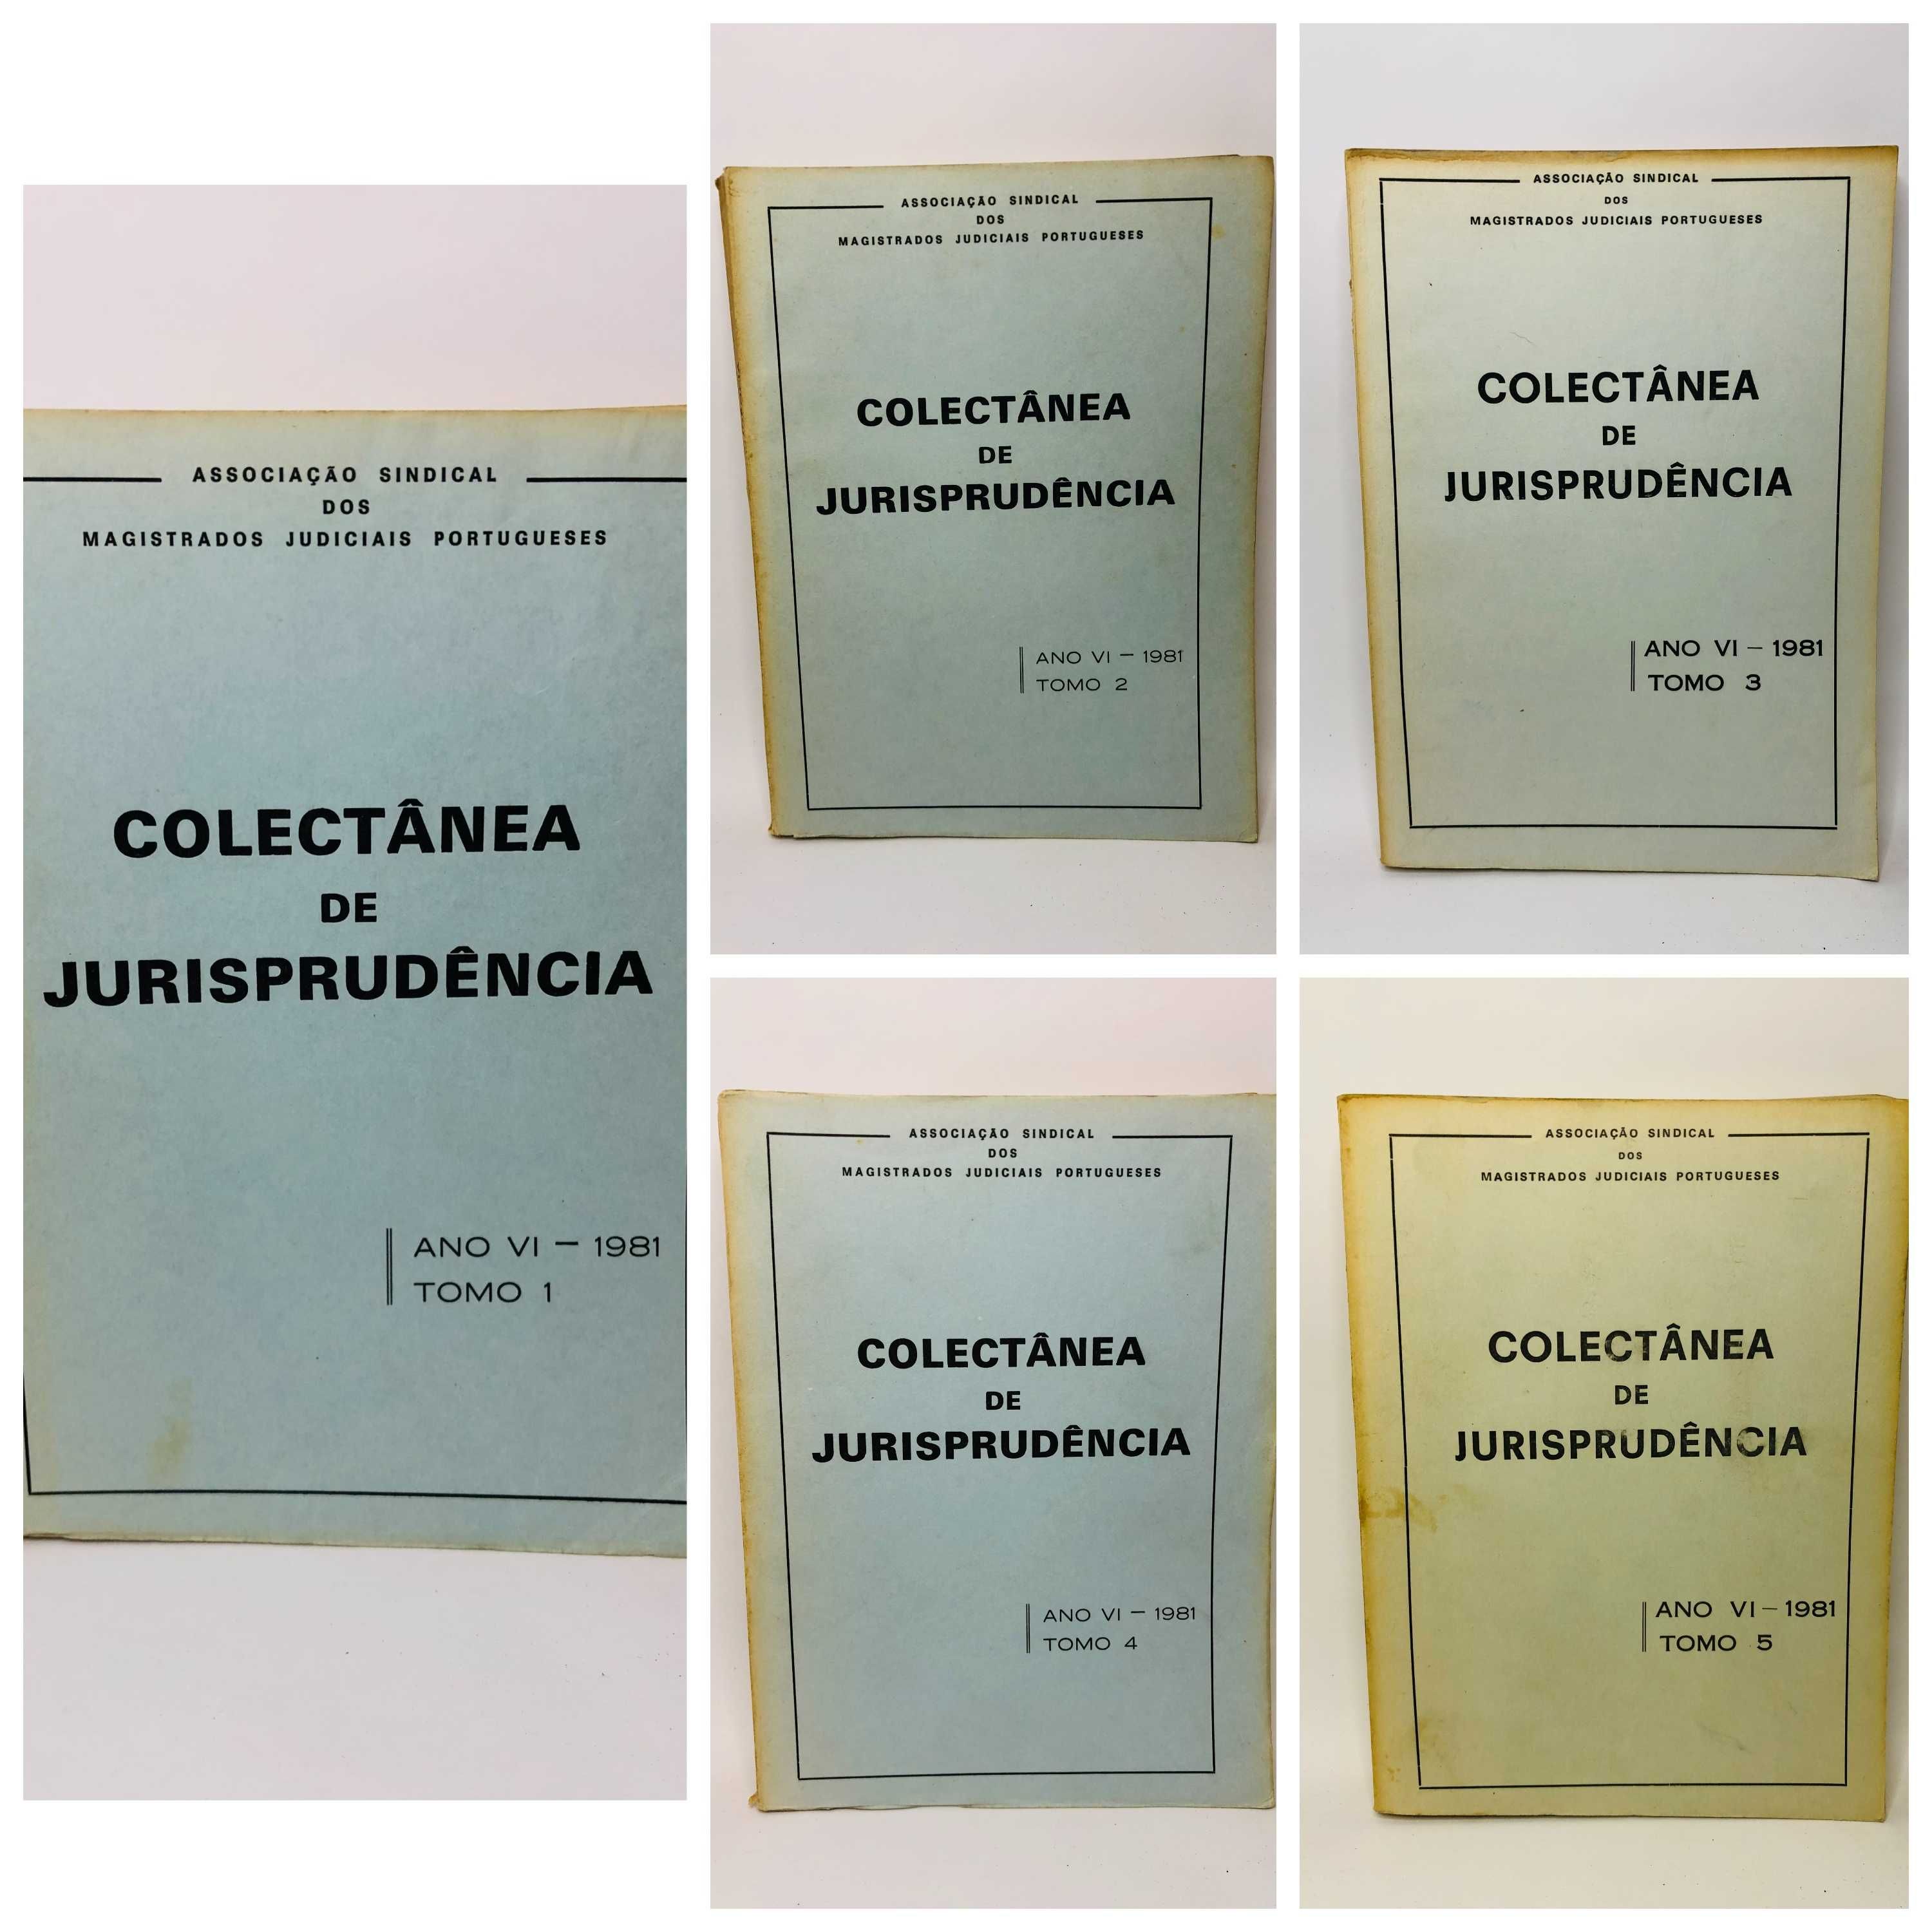 Colectânea de Jurisprudência Ano VI - 1981 Tomo 1, 2, 3, 4 e 5